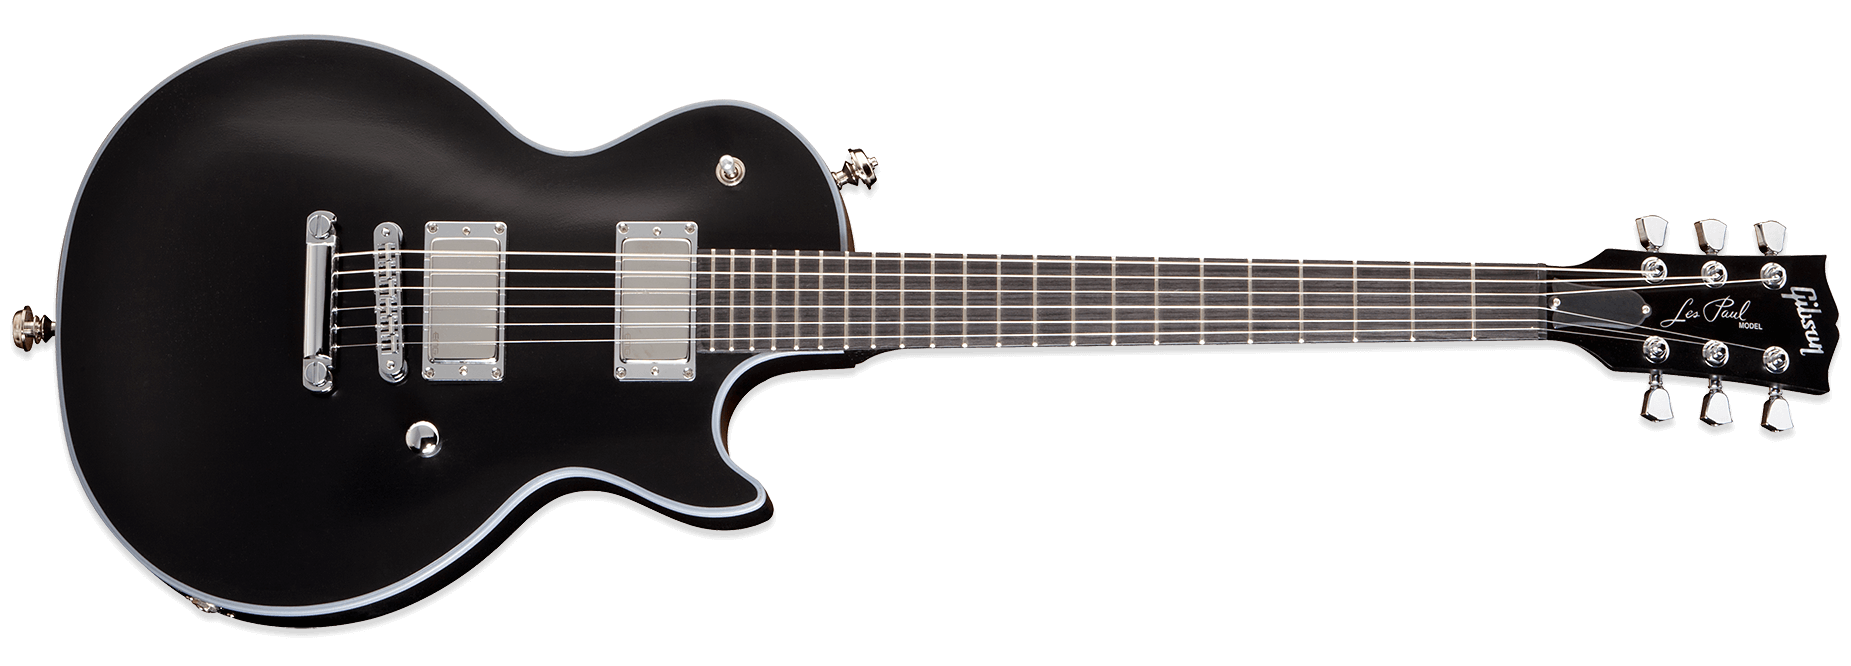 Gibson Metal Rock Guitar Transparent Free PNG